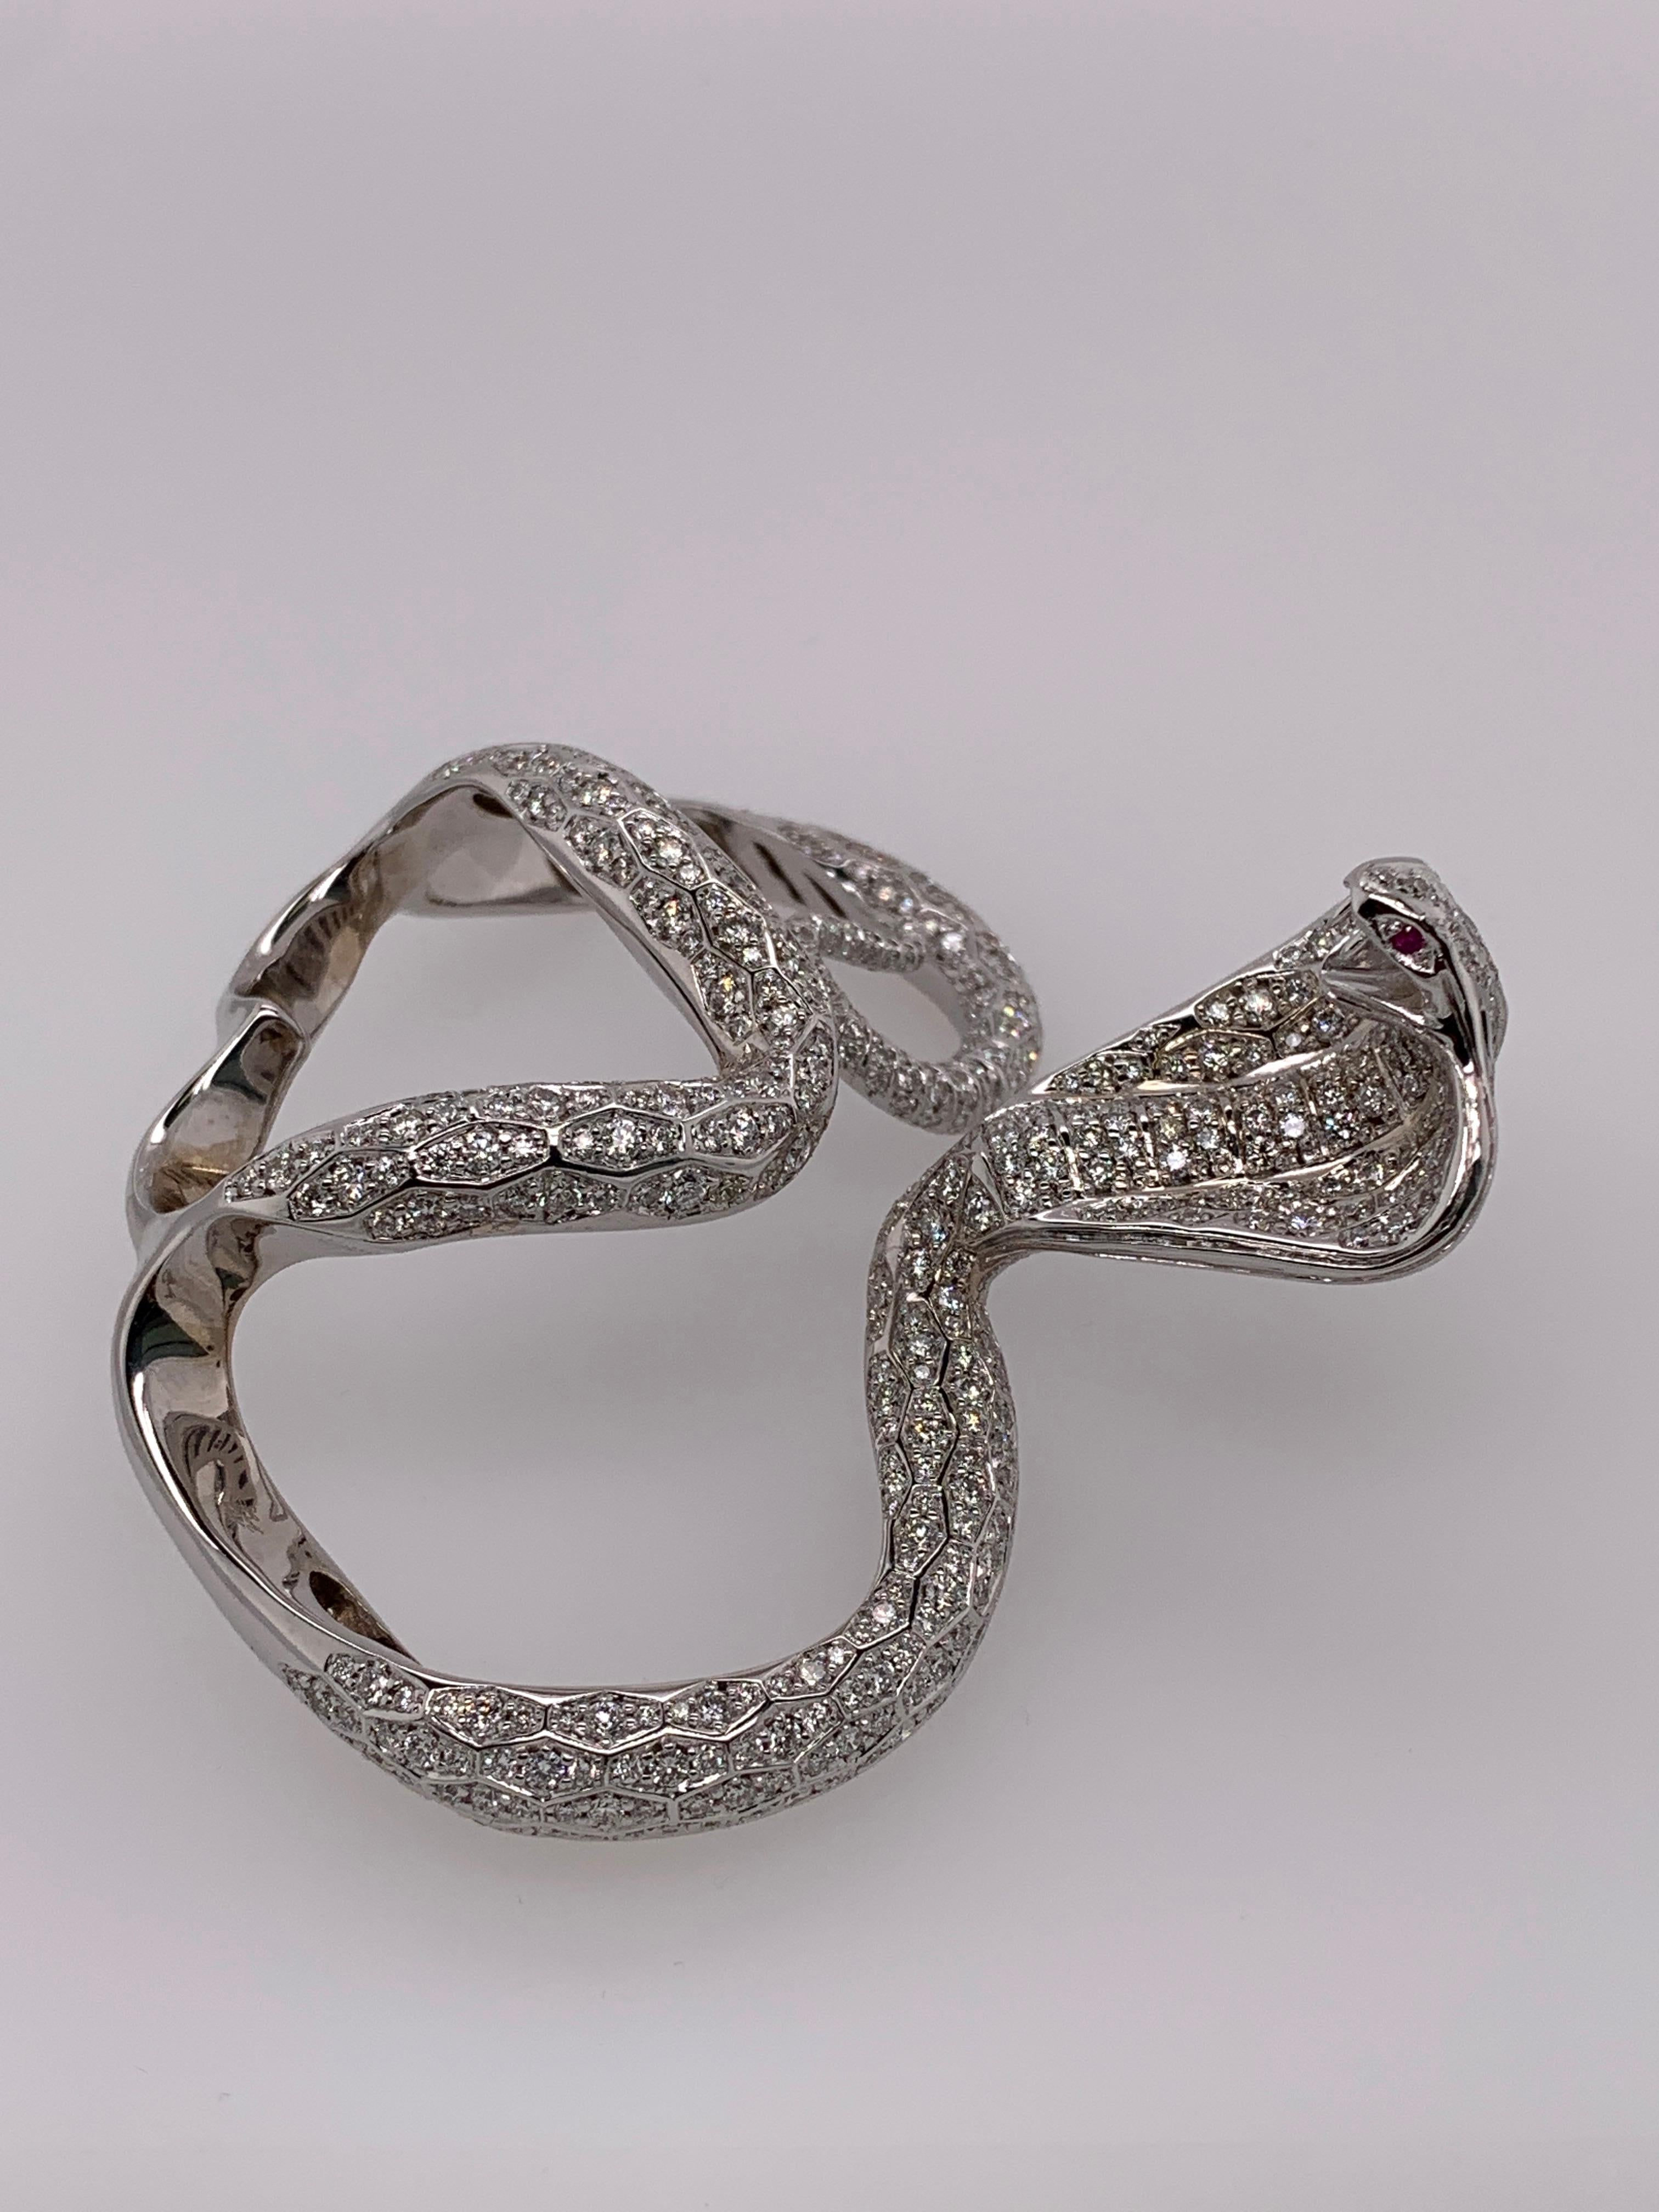 Women's White Gold White Diamond Ring, Cobra Snake Ring For Sale